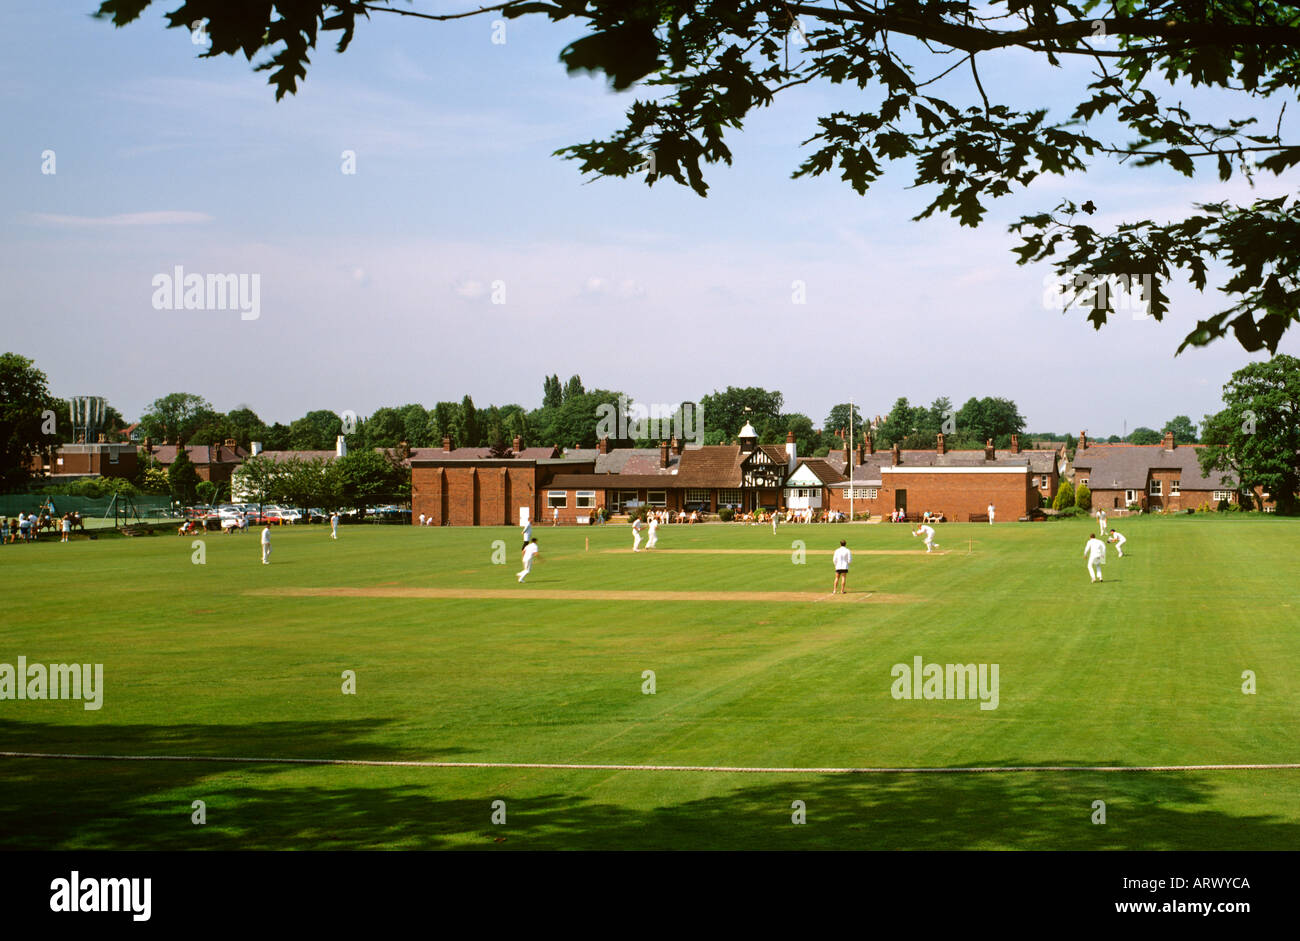 Cheshire Alderley Edge village cricket match in progress Stock Photo